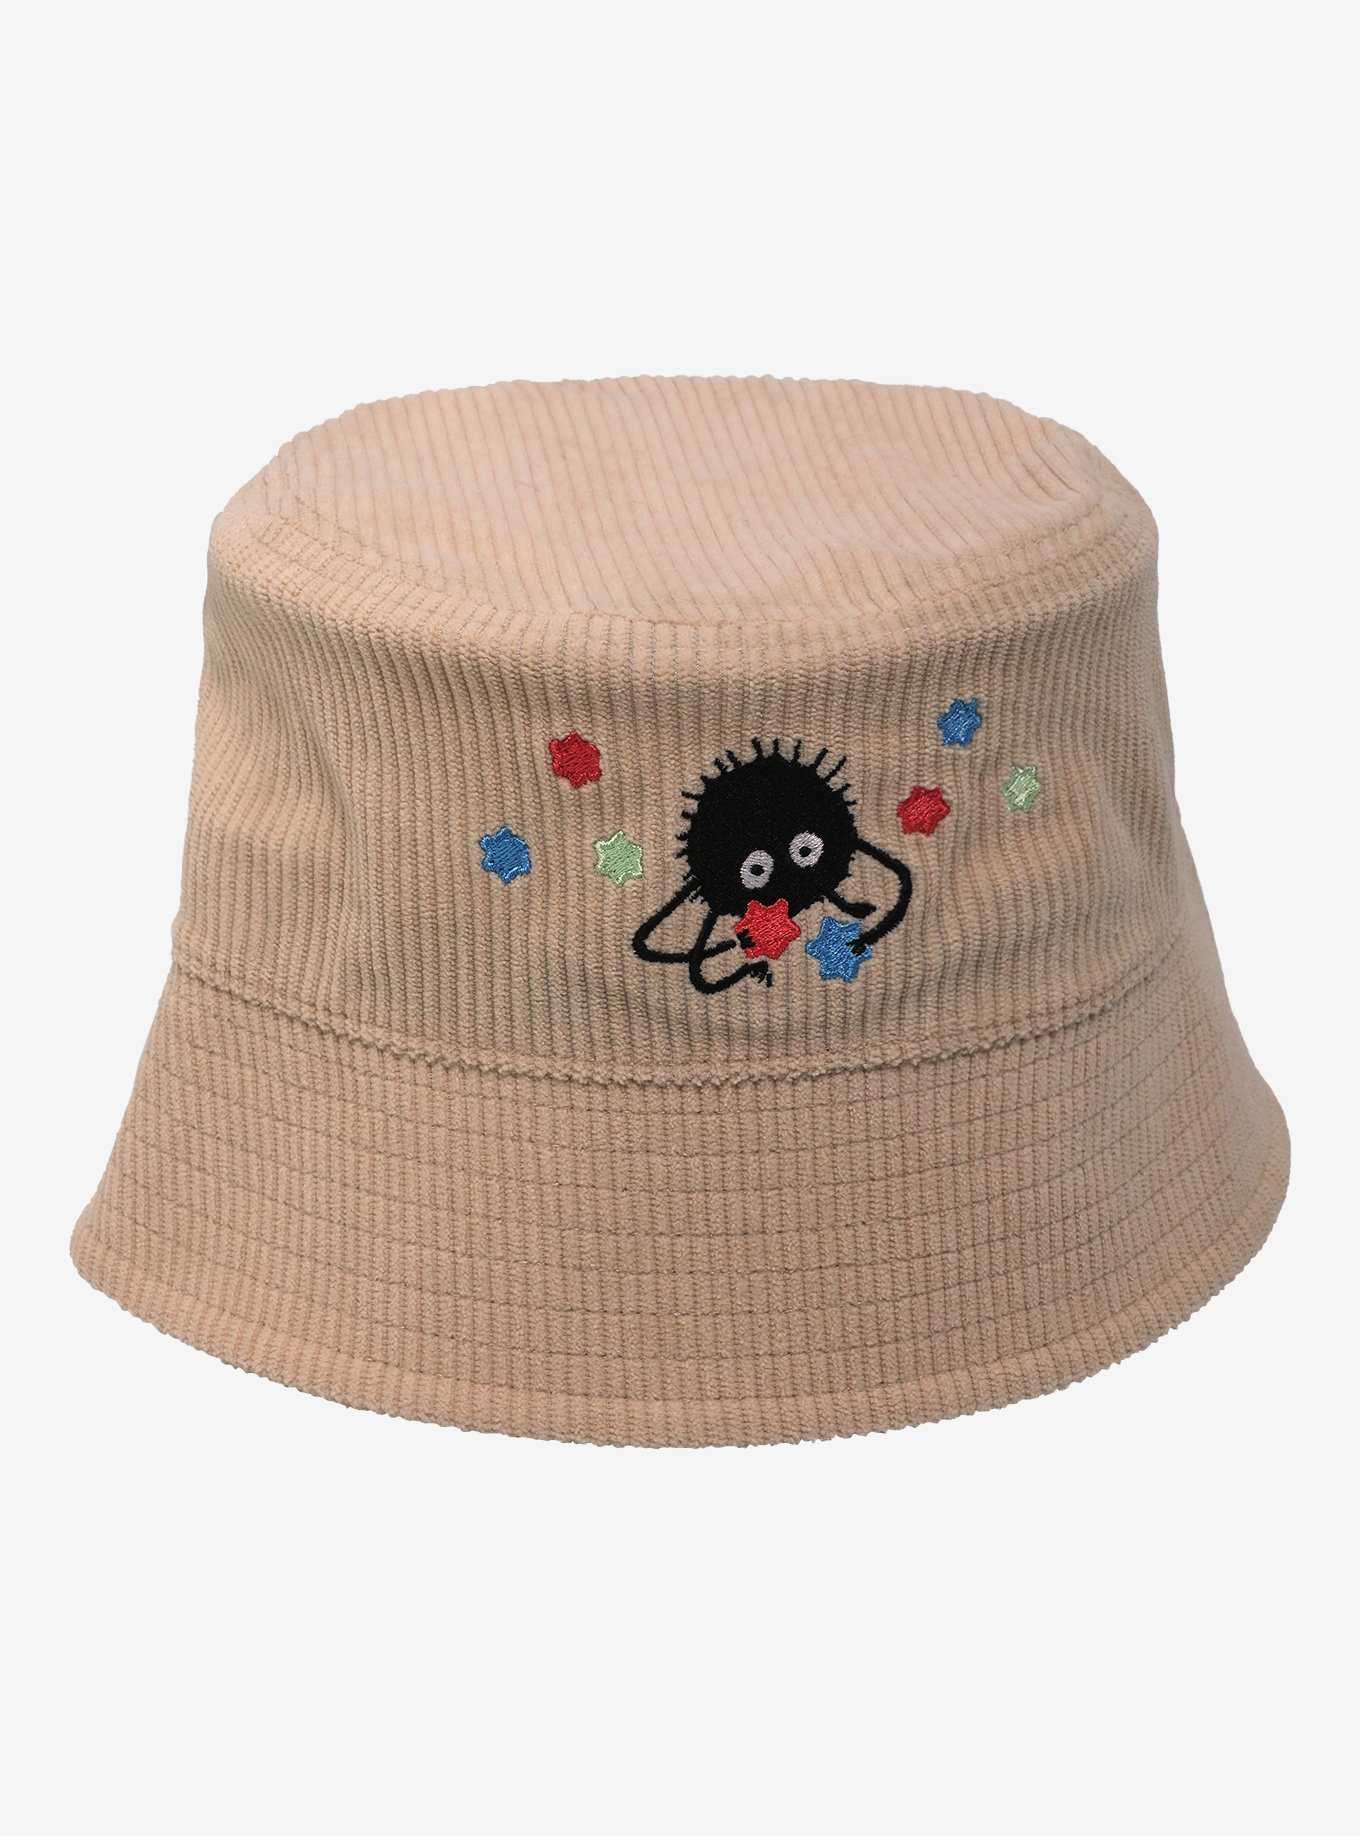 Studio Ghibli® Spirited Away Soot Sprite Corduroy Bucket Hat, , hi-res